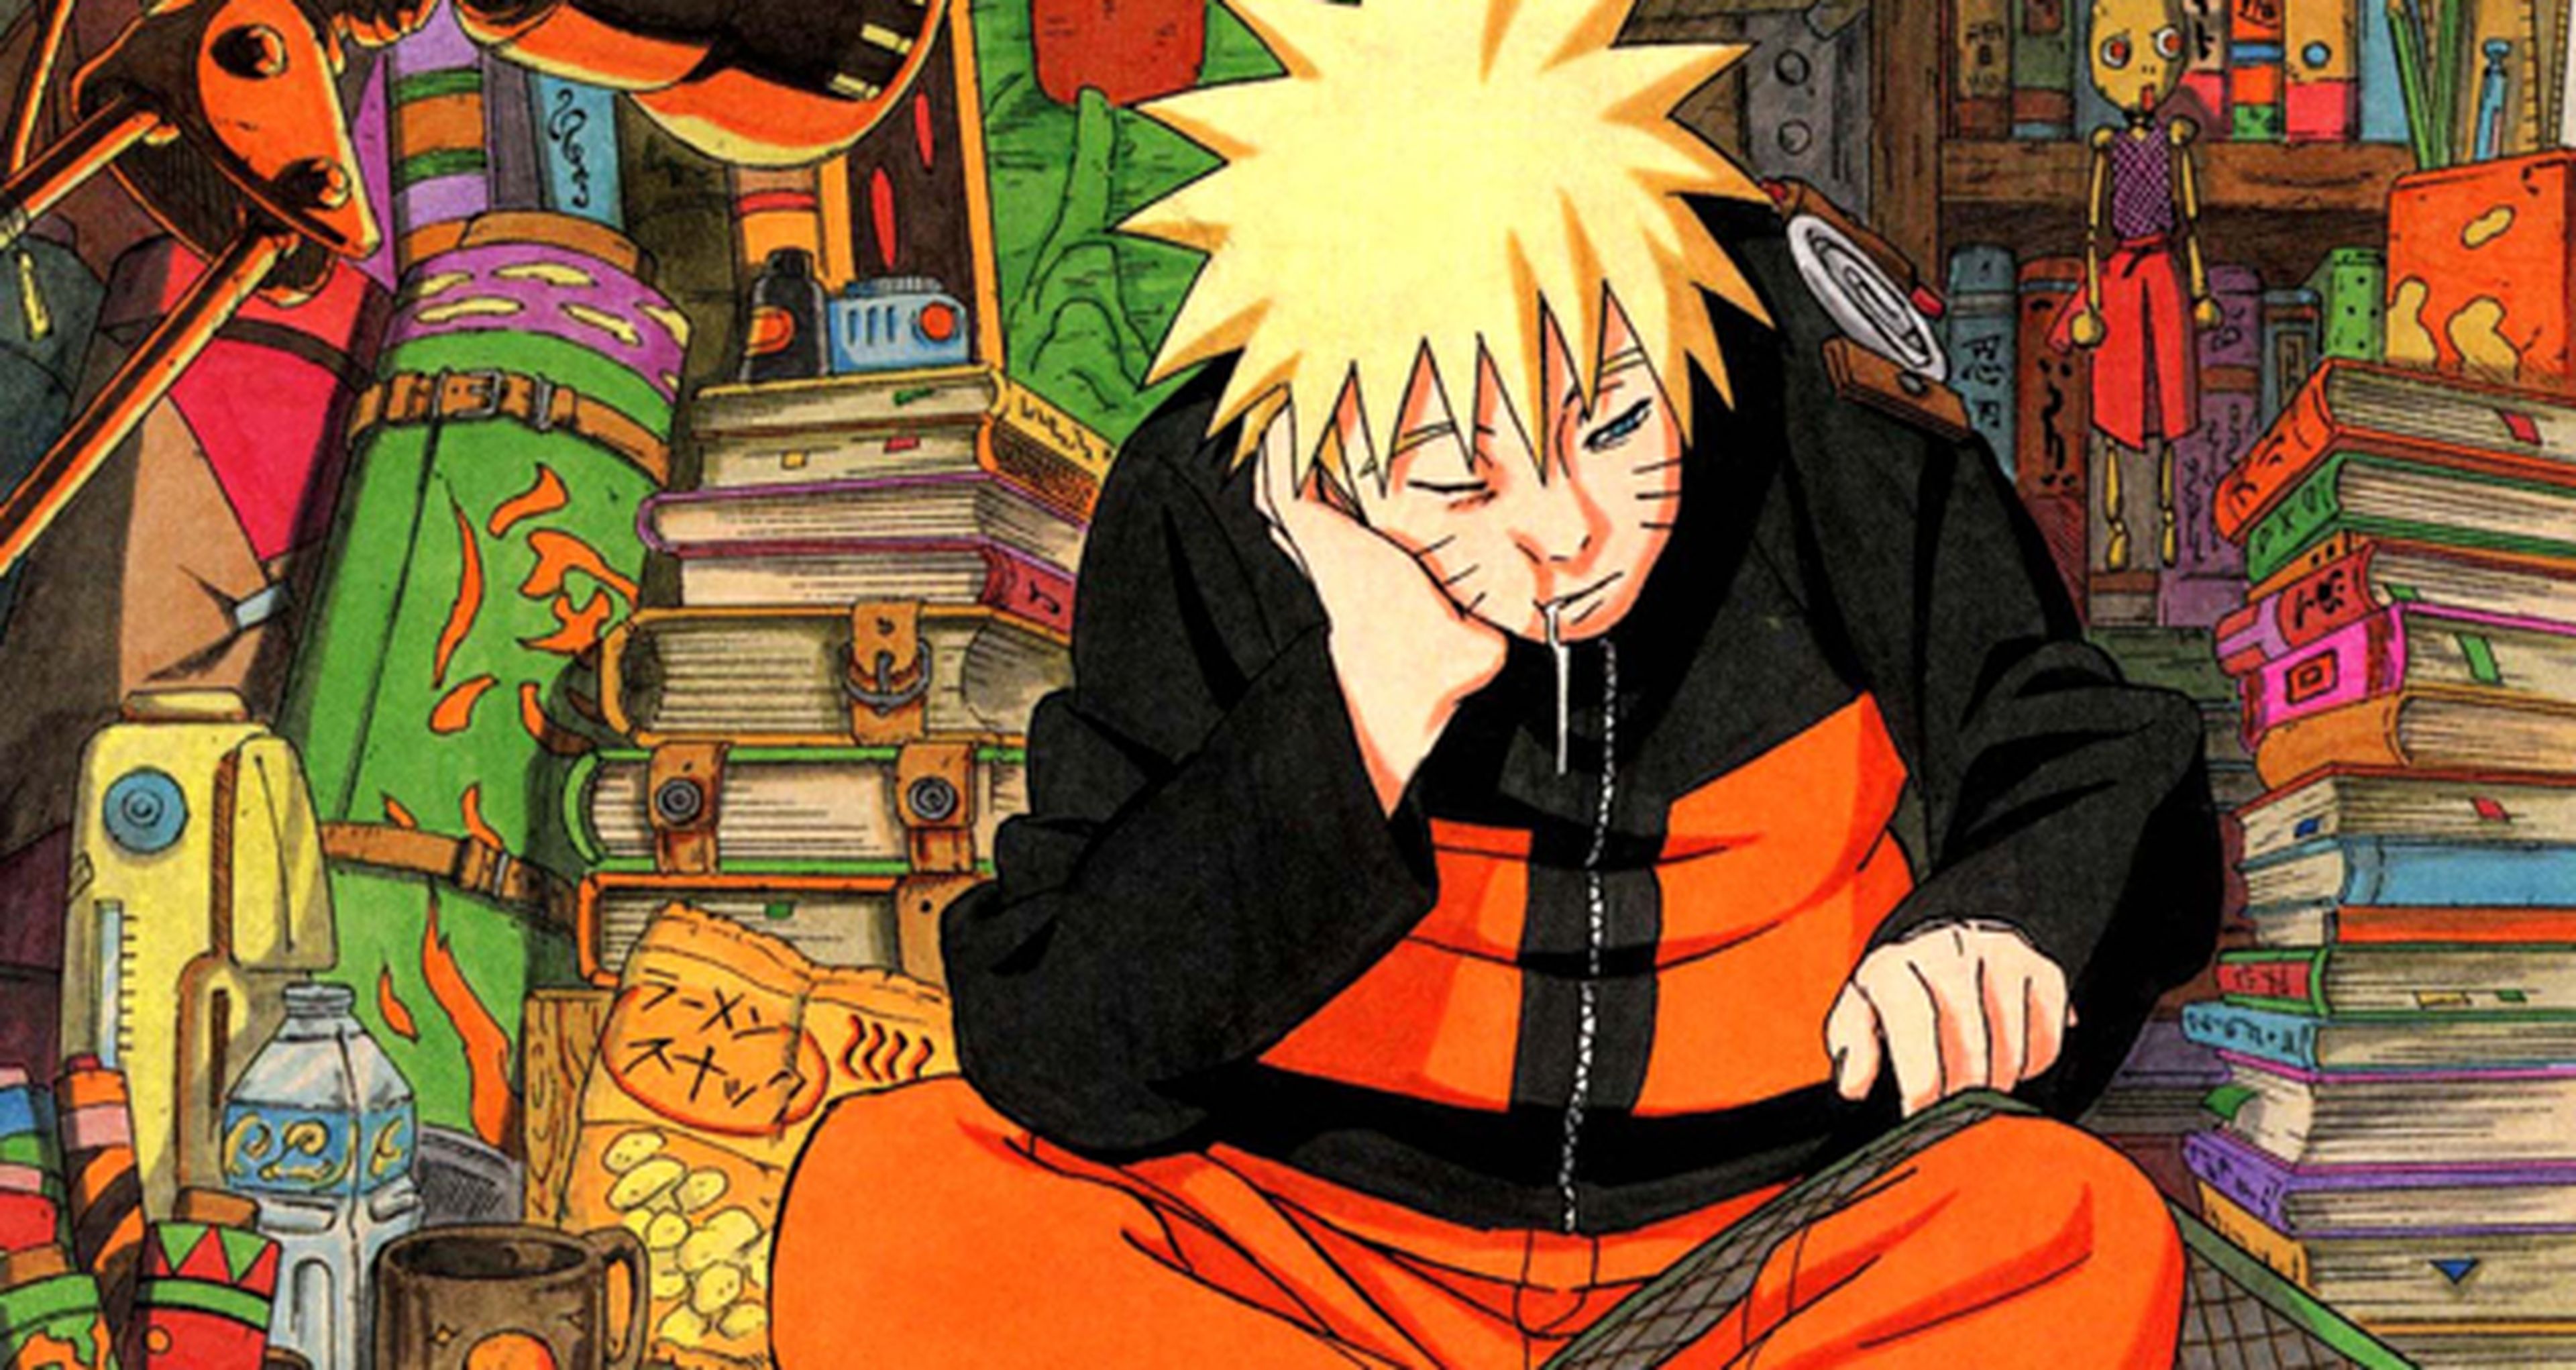 Naruto - Primera Guía de Personajes, en julio